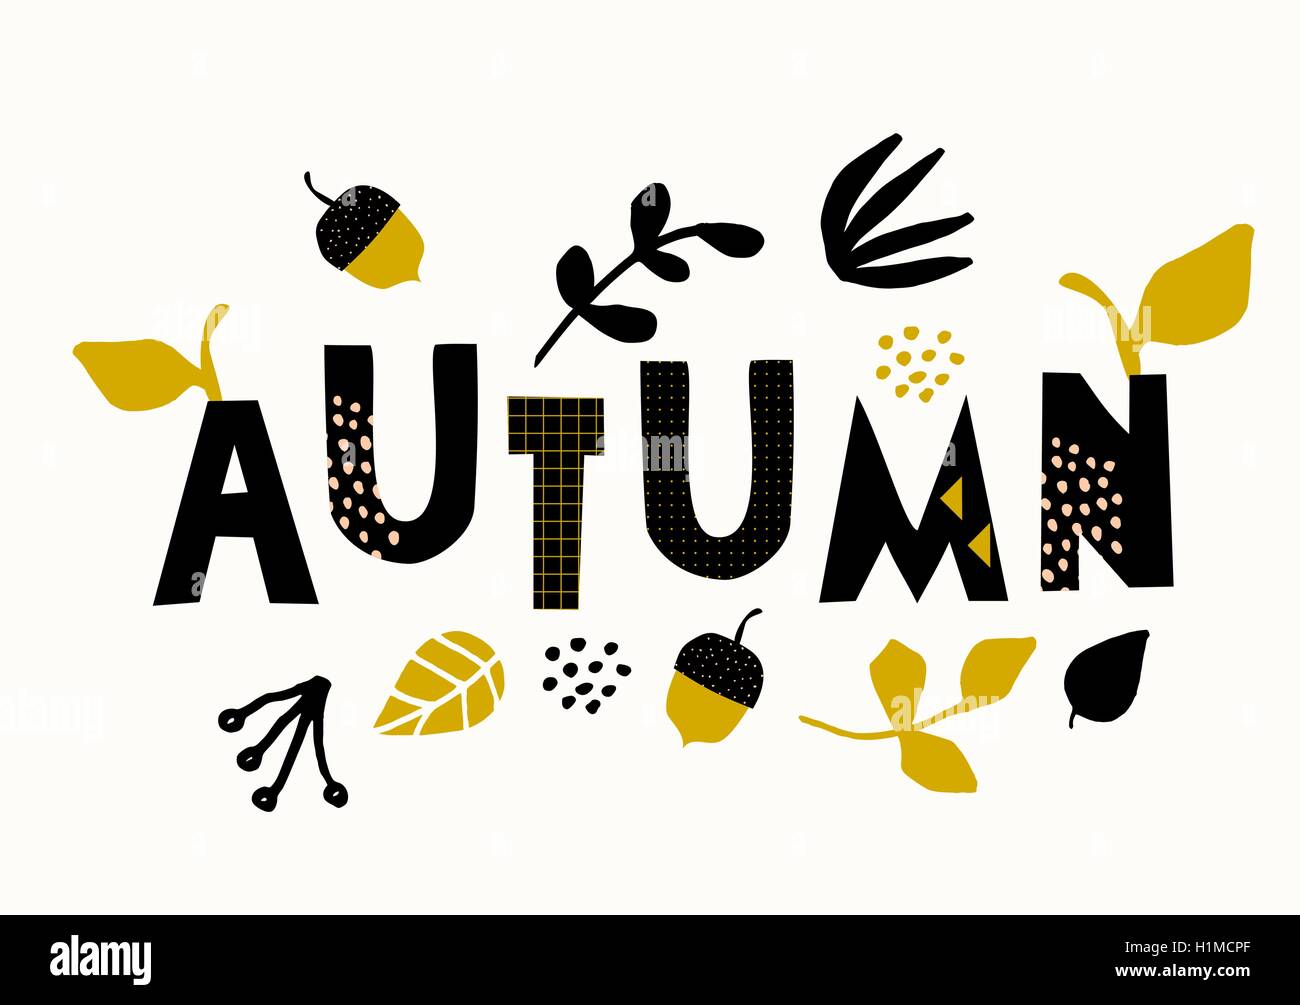 Typografischen Stildesign für die Herbstsaison mit schwarzen Buchstaben, Blumenschmuck und geometrische Elemente, isoliert auf weiß b Stock Vektor